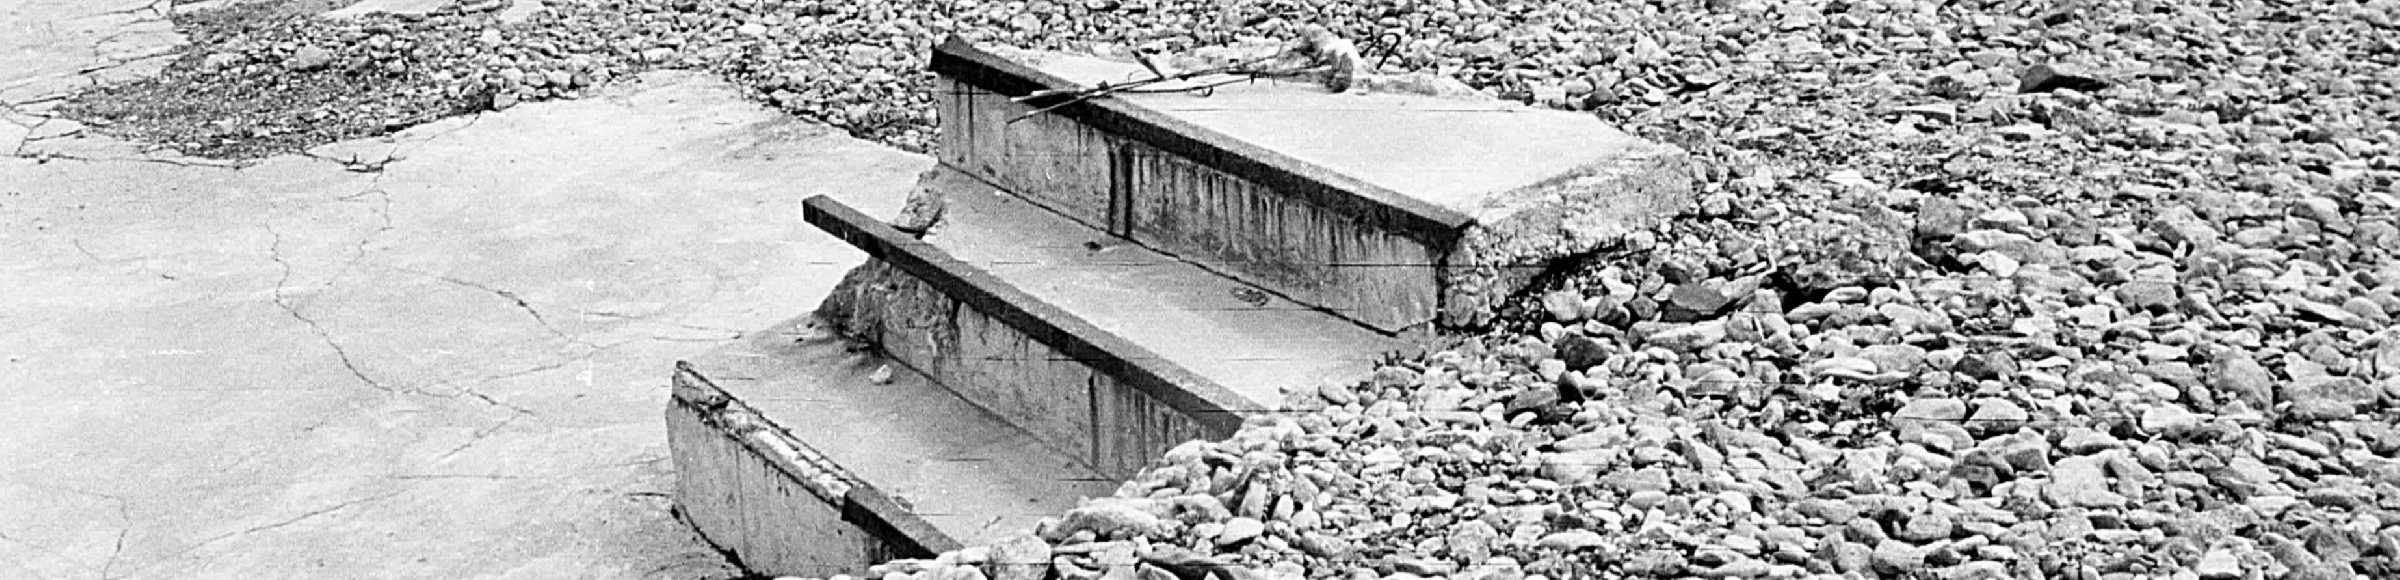 Treppenreste an der Schotterfläche einer ehemaligen Lagerbaracke an der Gedenkstätte des KZ Buchenwald in Thüringen in der DDR